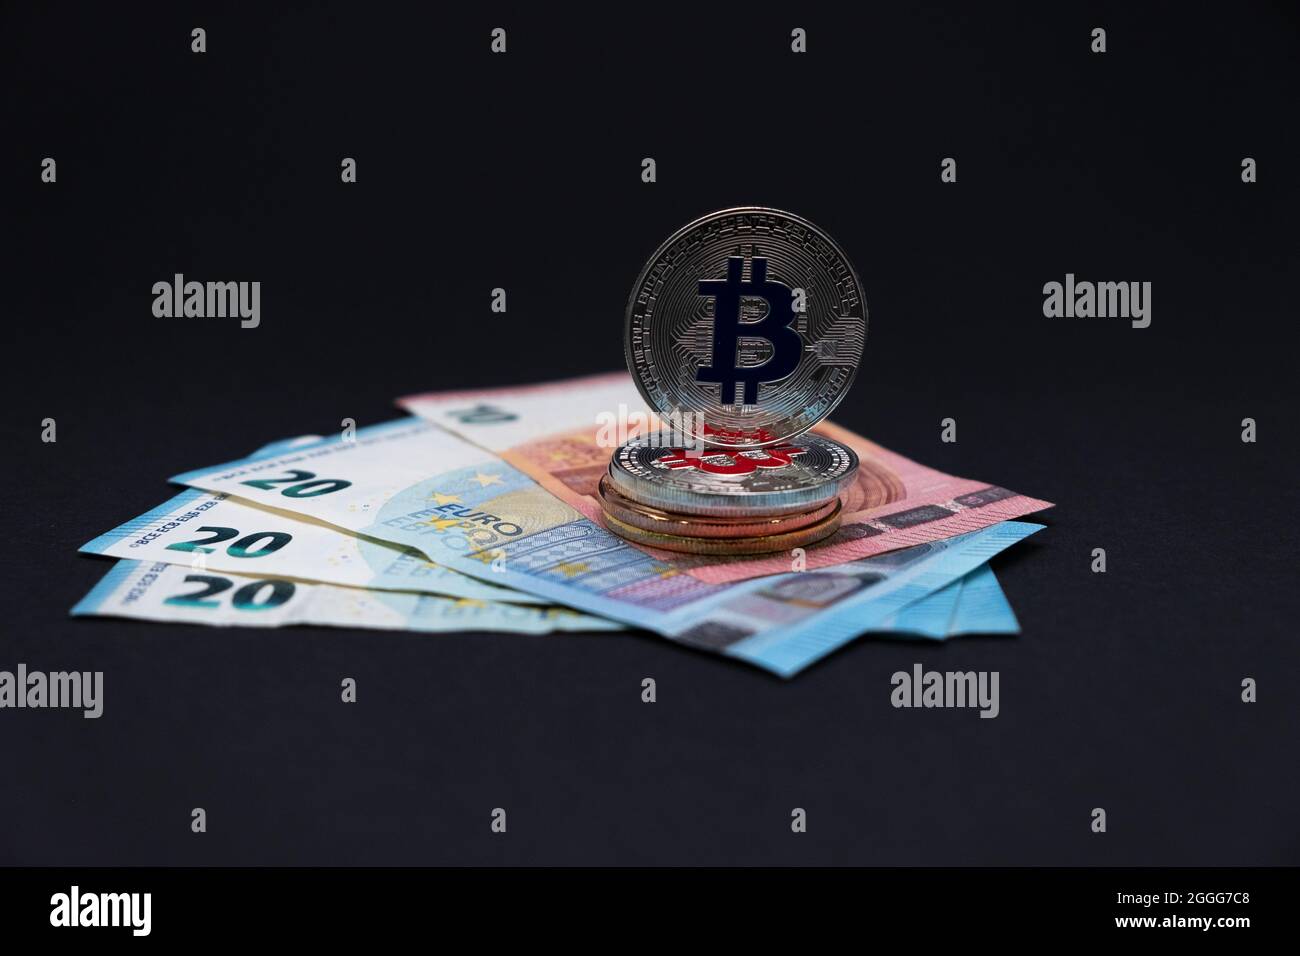 Bitcoins encima de los billetes de banco de 20 y 10 euros. Bitcoins en billetes de diez y veinte euros sobre fondo oscuro. Foto de stock